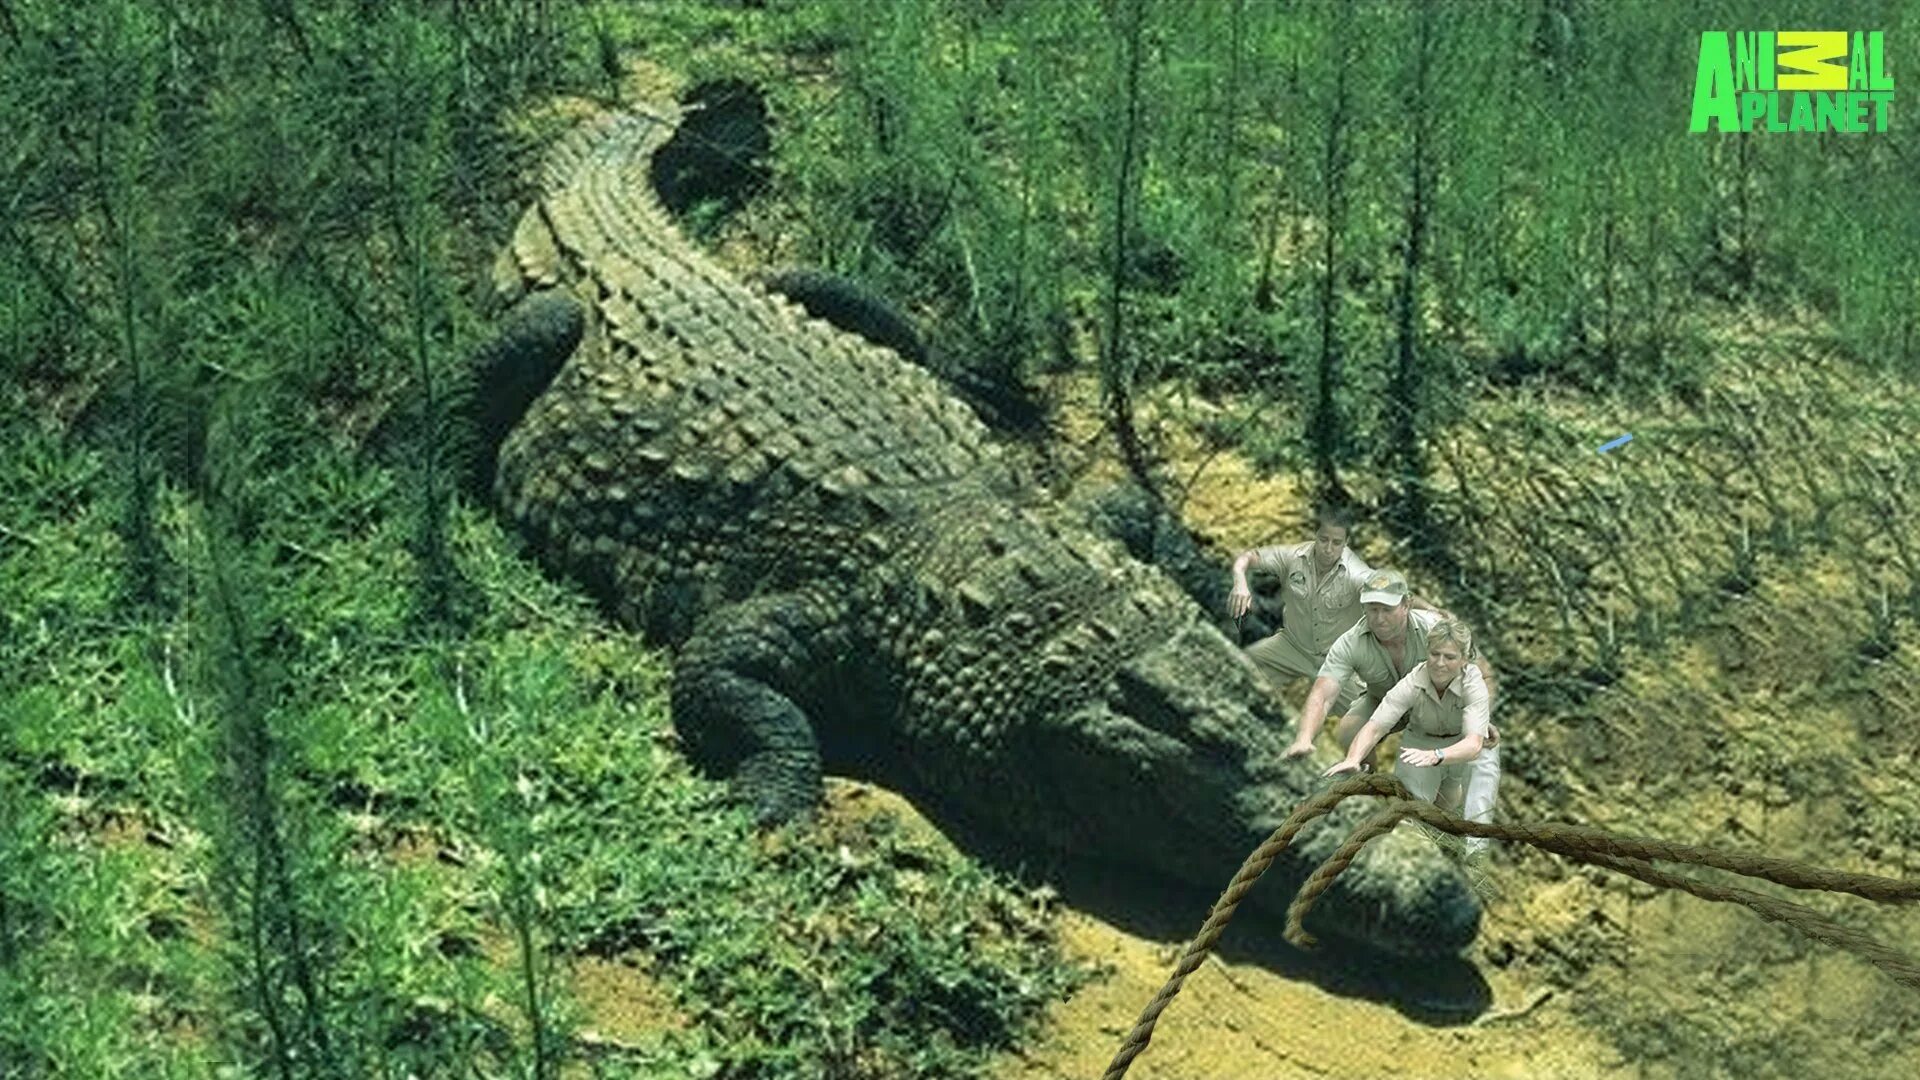 Гигантский гребнистый крокодил людоед. Самый большой гребнистый крокодил в мире.